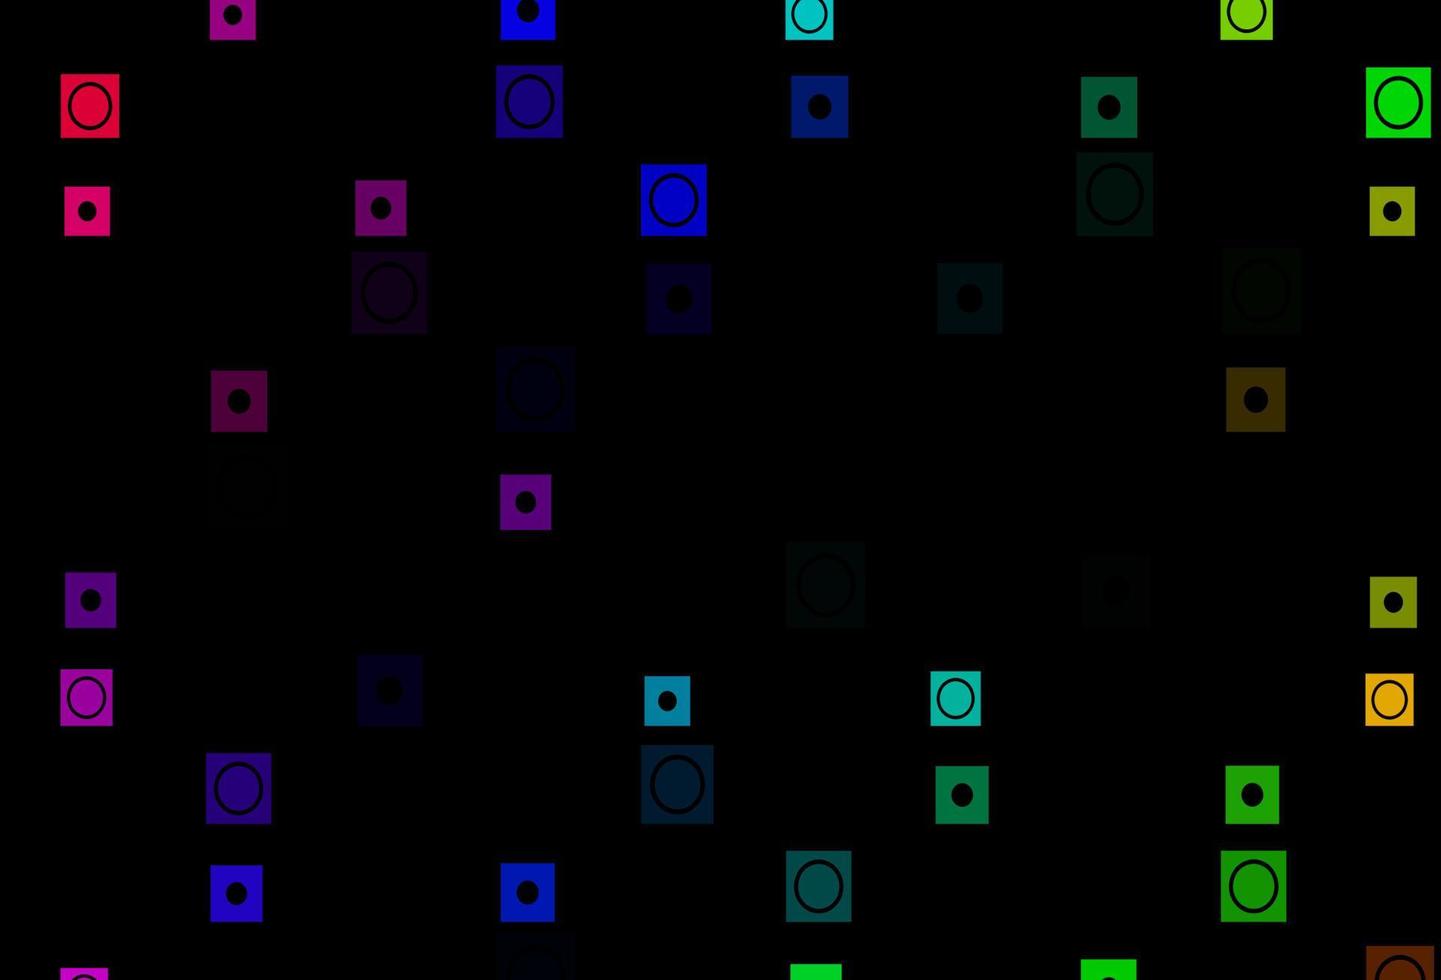 multicolorido escuro, modelo de vetor de arco-íris com círculos, retângulos.